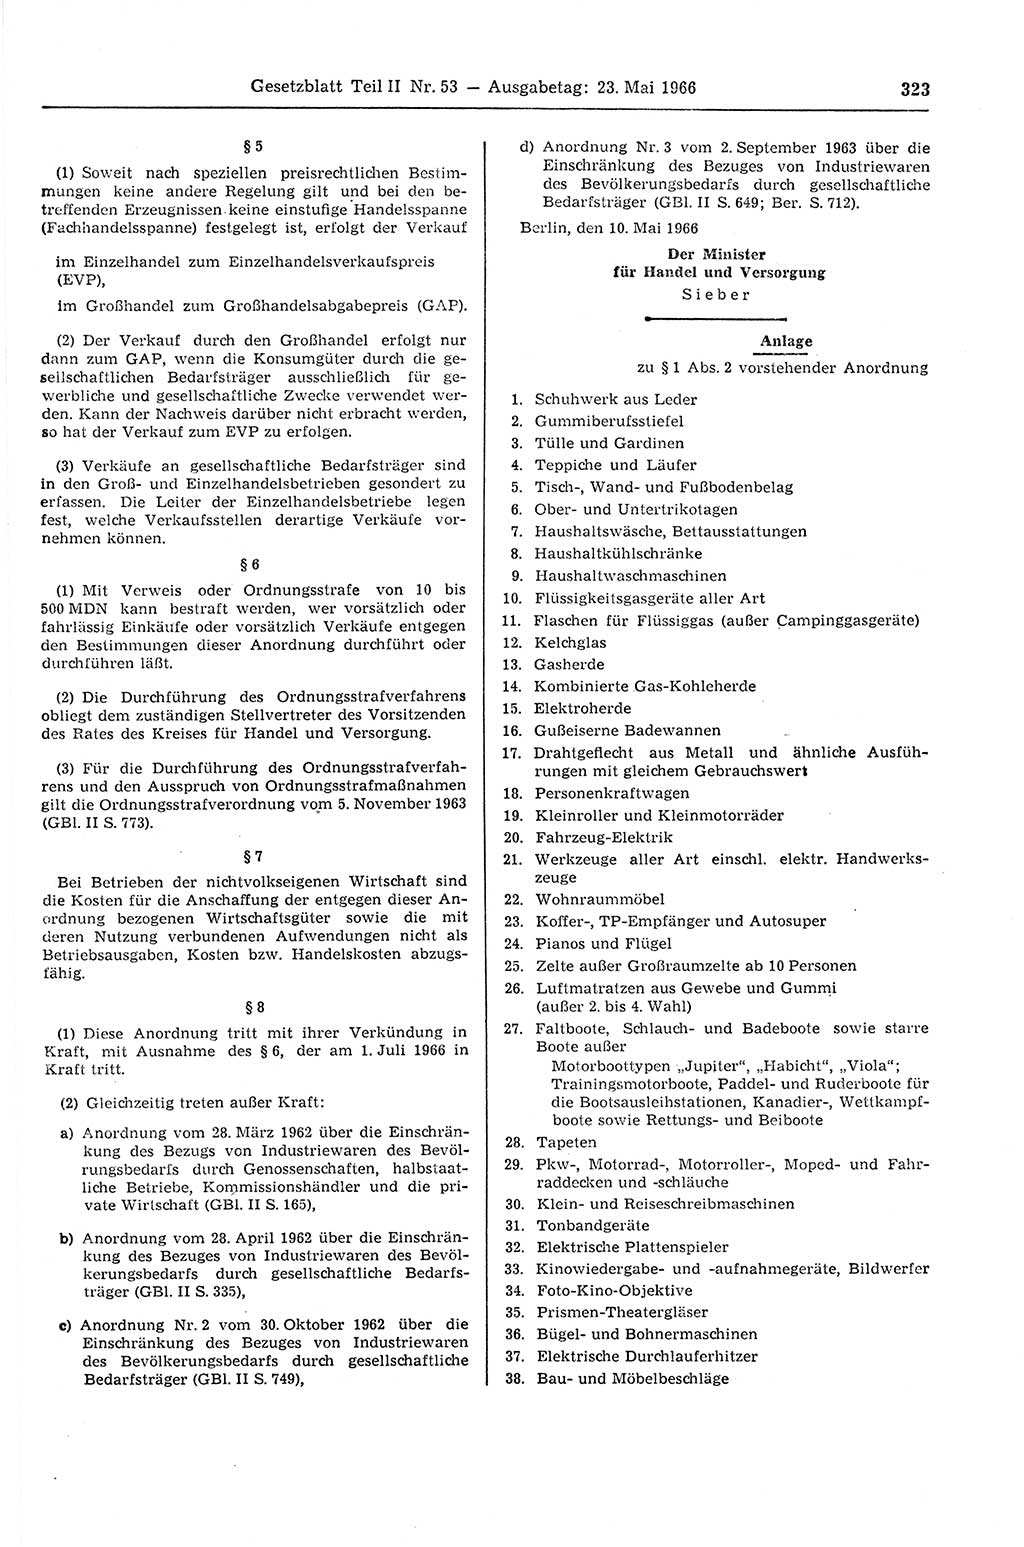 Gesetzblatt (GBl.) der Deutschen Demokratischen Republik (DDR) Teil ⅠⅠ 1966, Seite 323 (GBl. DDR ⅠⅠ 1966, S. 323)